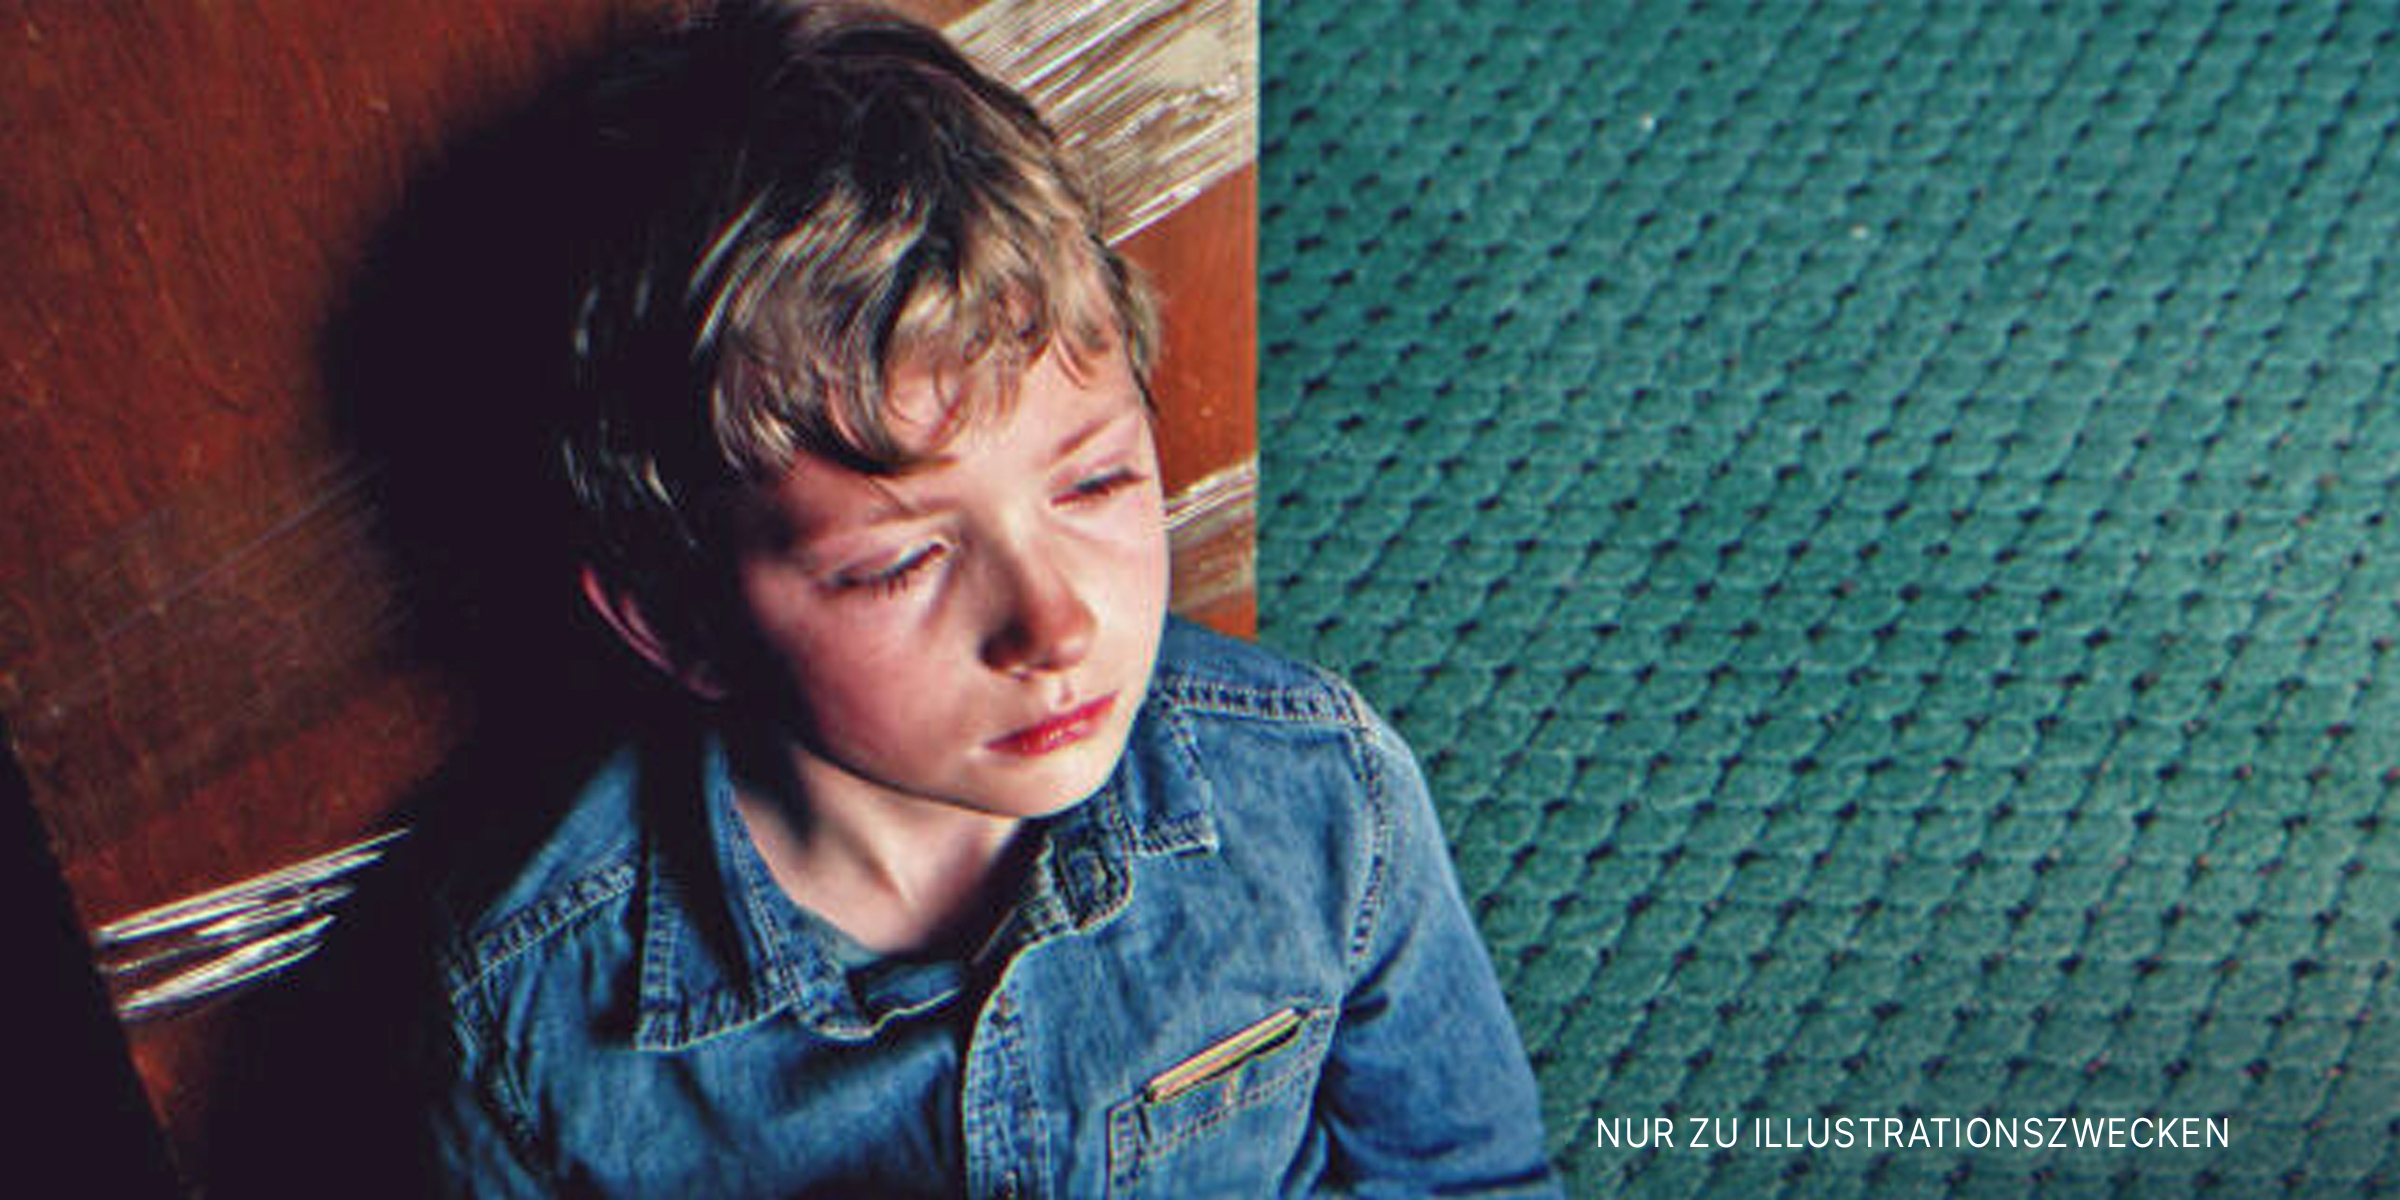 Trauriger Junge, der auf dem Boden sitzt | Quelle: Shutterstock